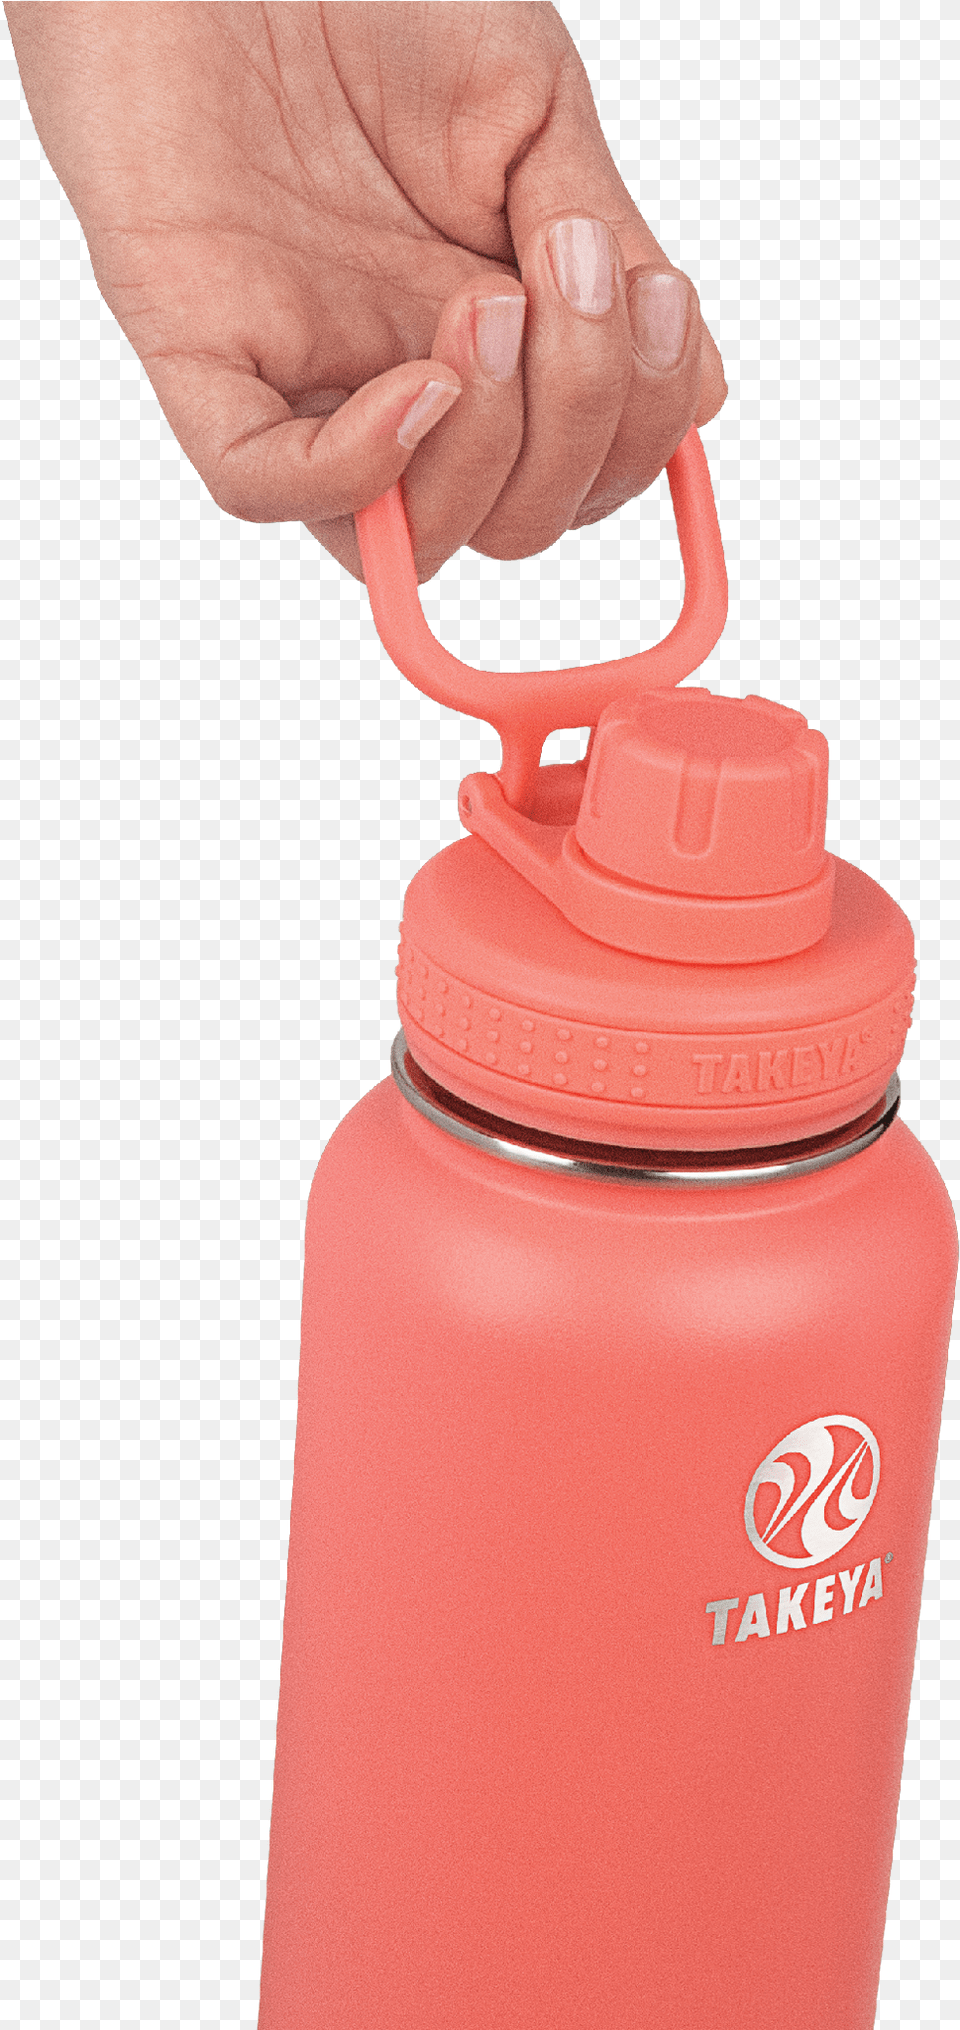 Smart Water Bottle Plastic Bottle, Water Bottle Png Image